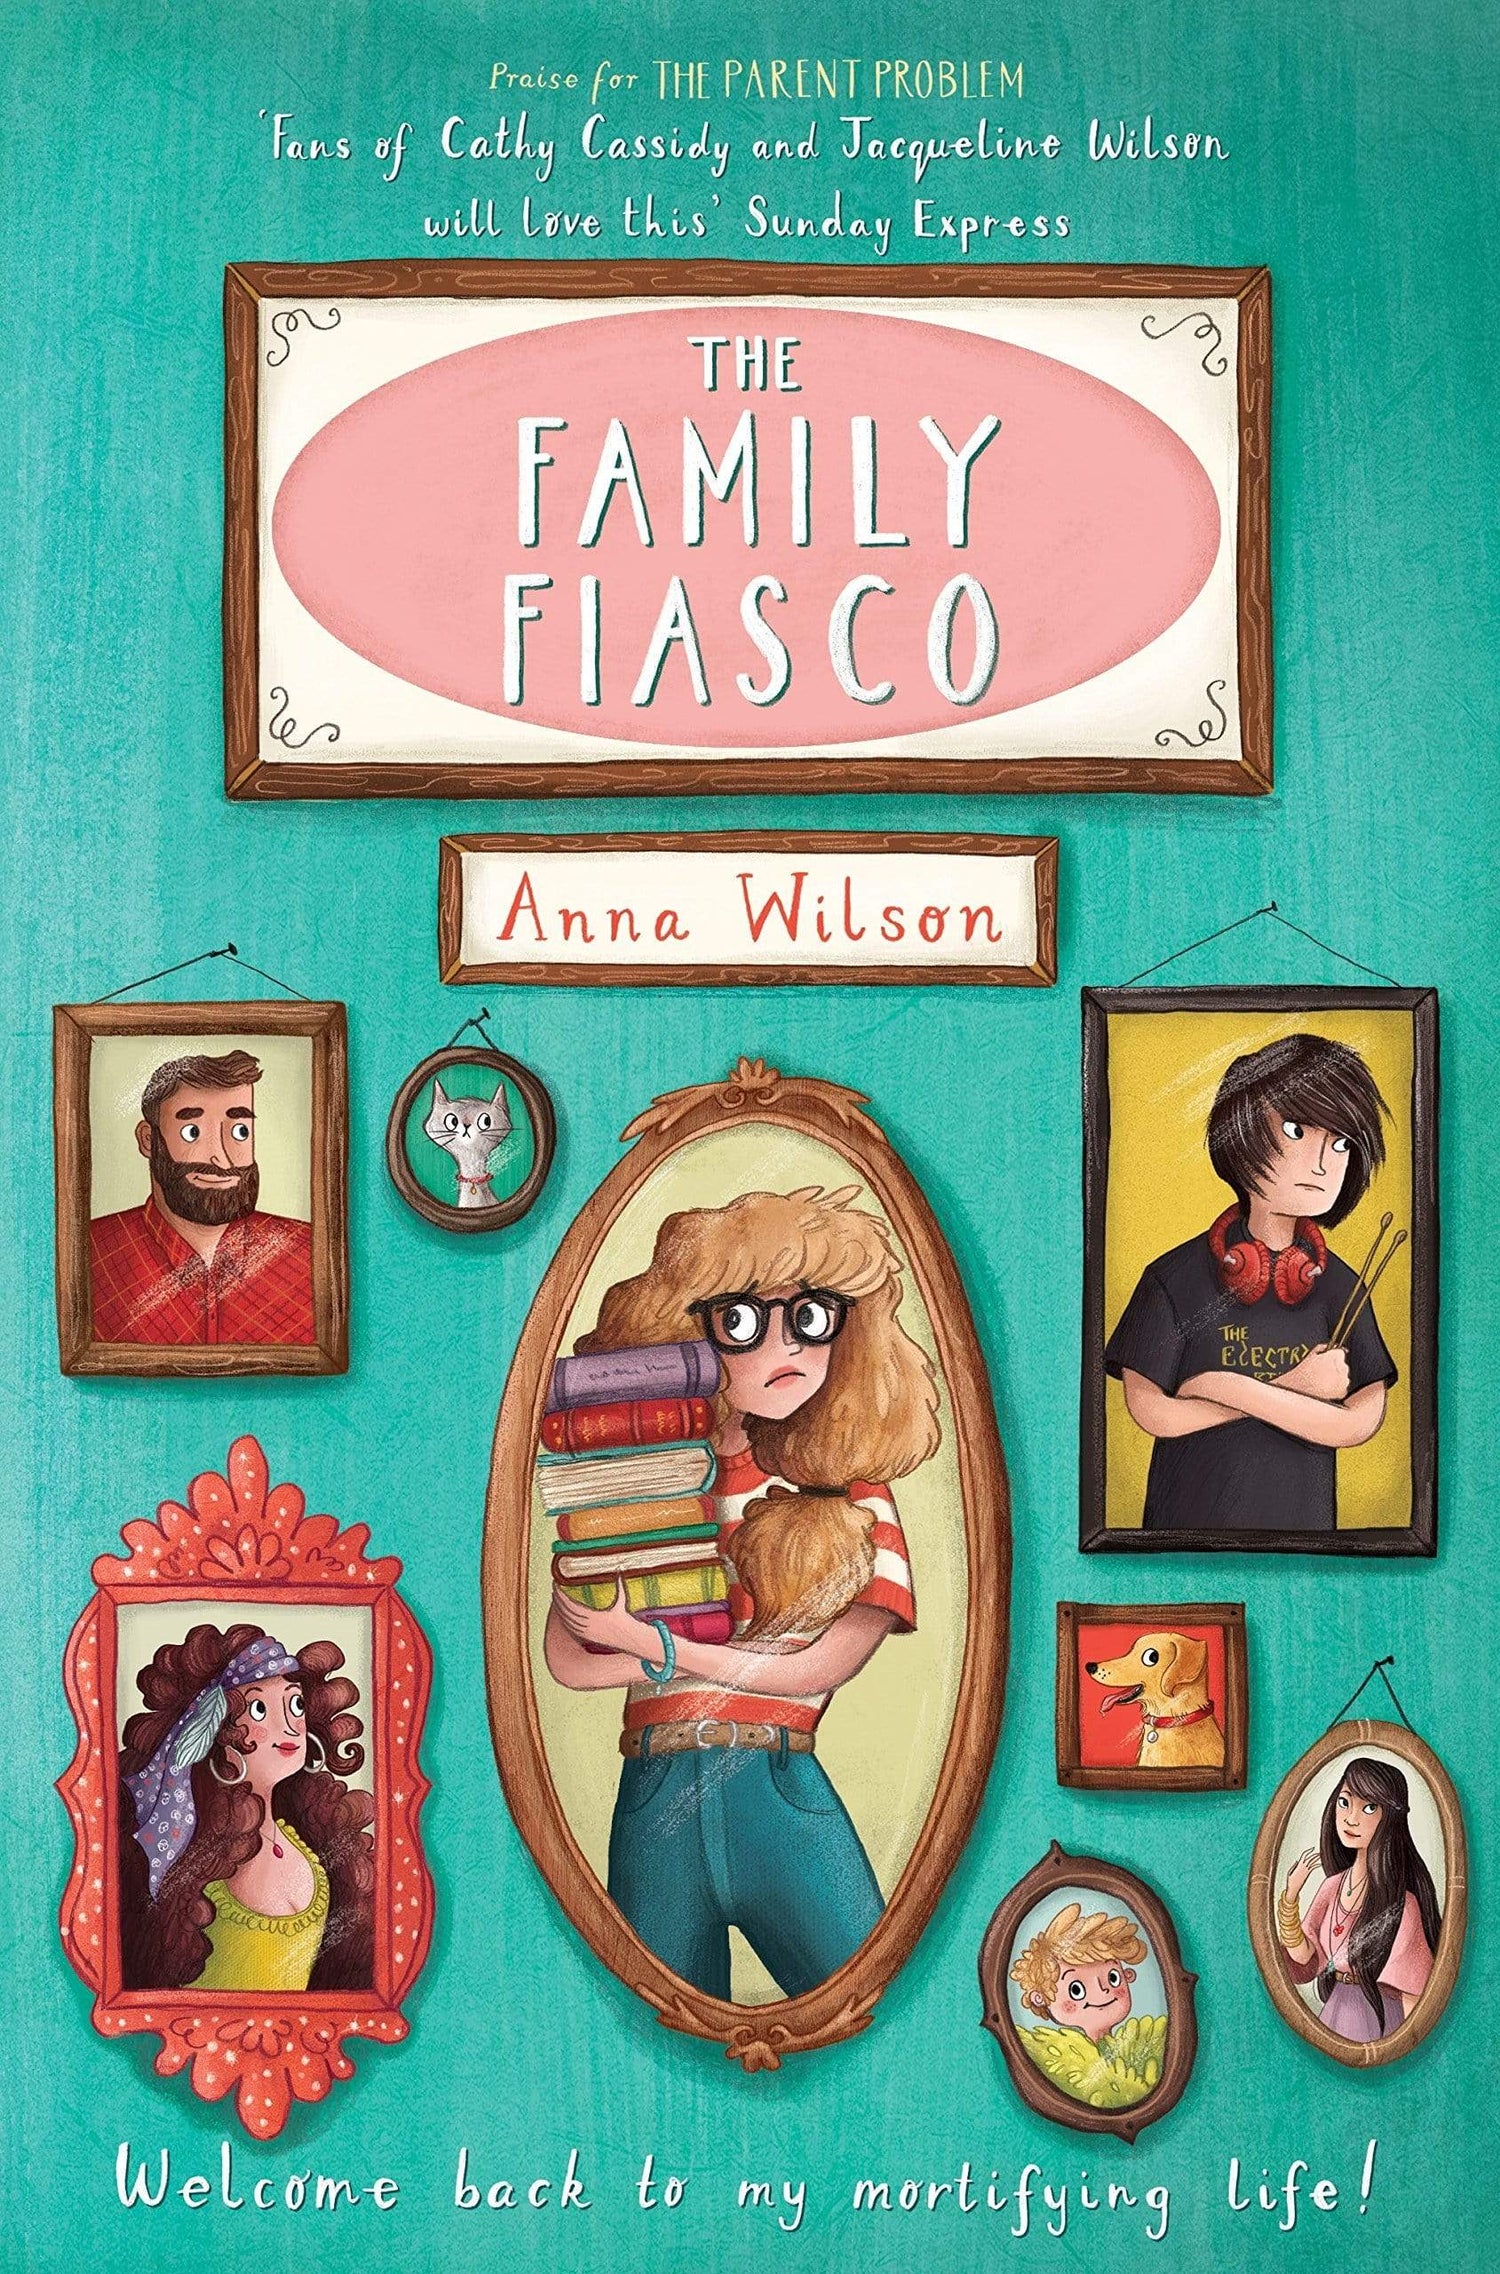 THE FAMILY FIASCO